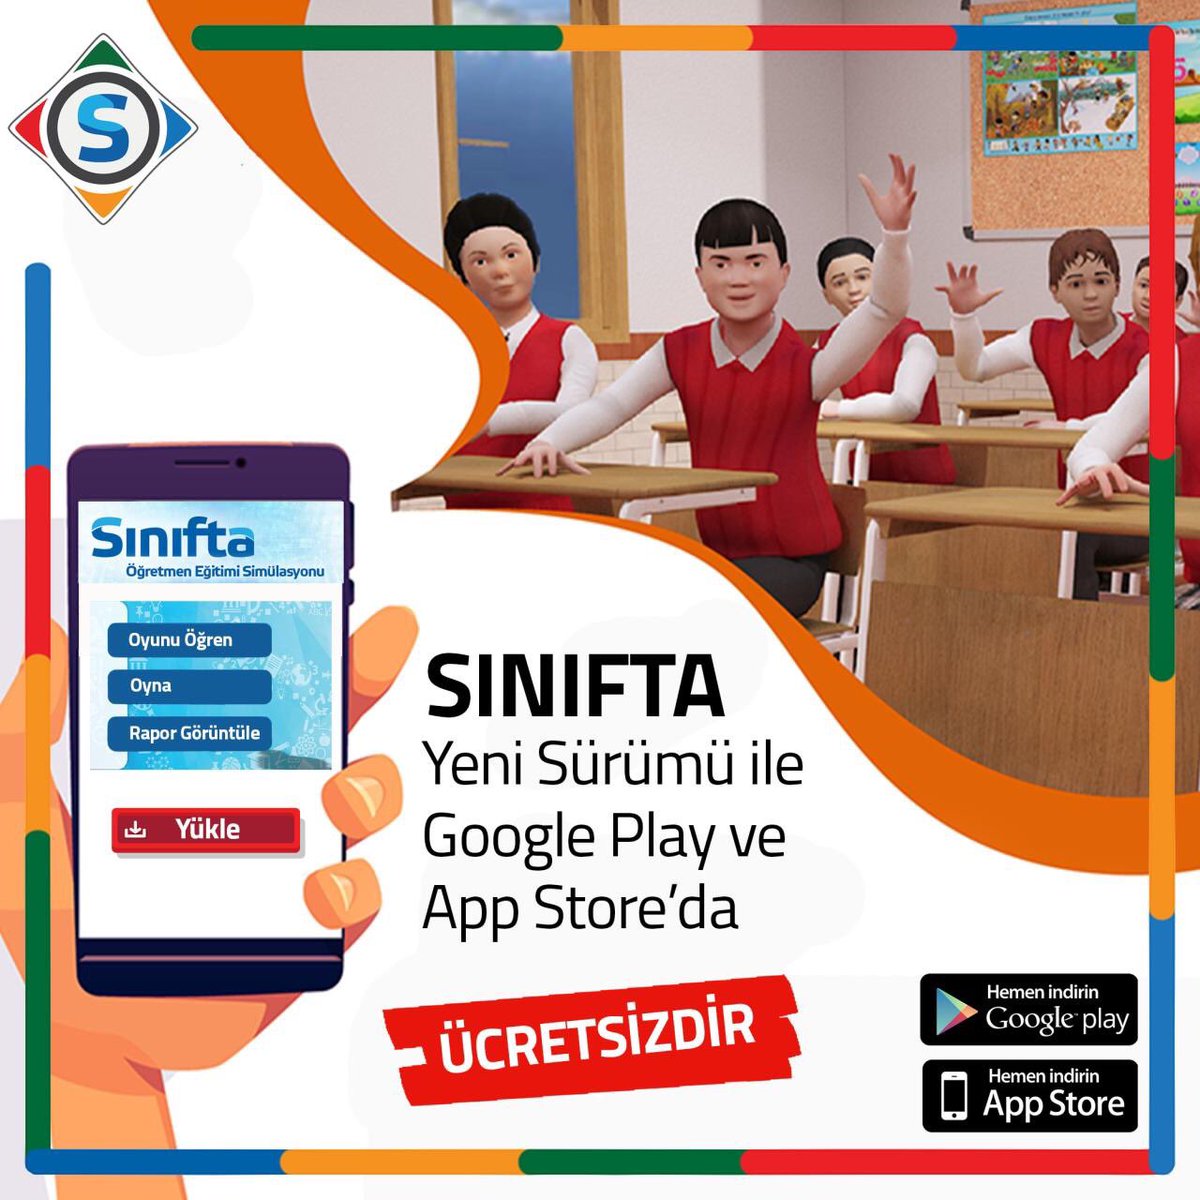 Hemen denemek için tıklayın!
App Store
apps.apple.com/us/app/s%C4%B1…
Google Play
play.google.com/store/apps/det…

#simsoft #sınıfta #eğitim #öğretmenlik #öğretmen #simülasyon